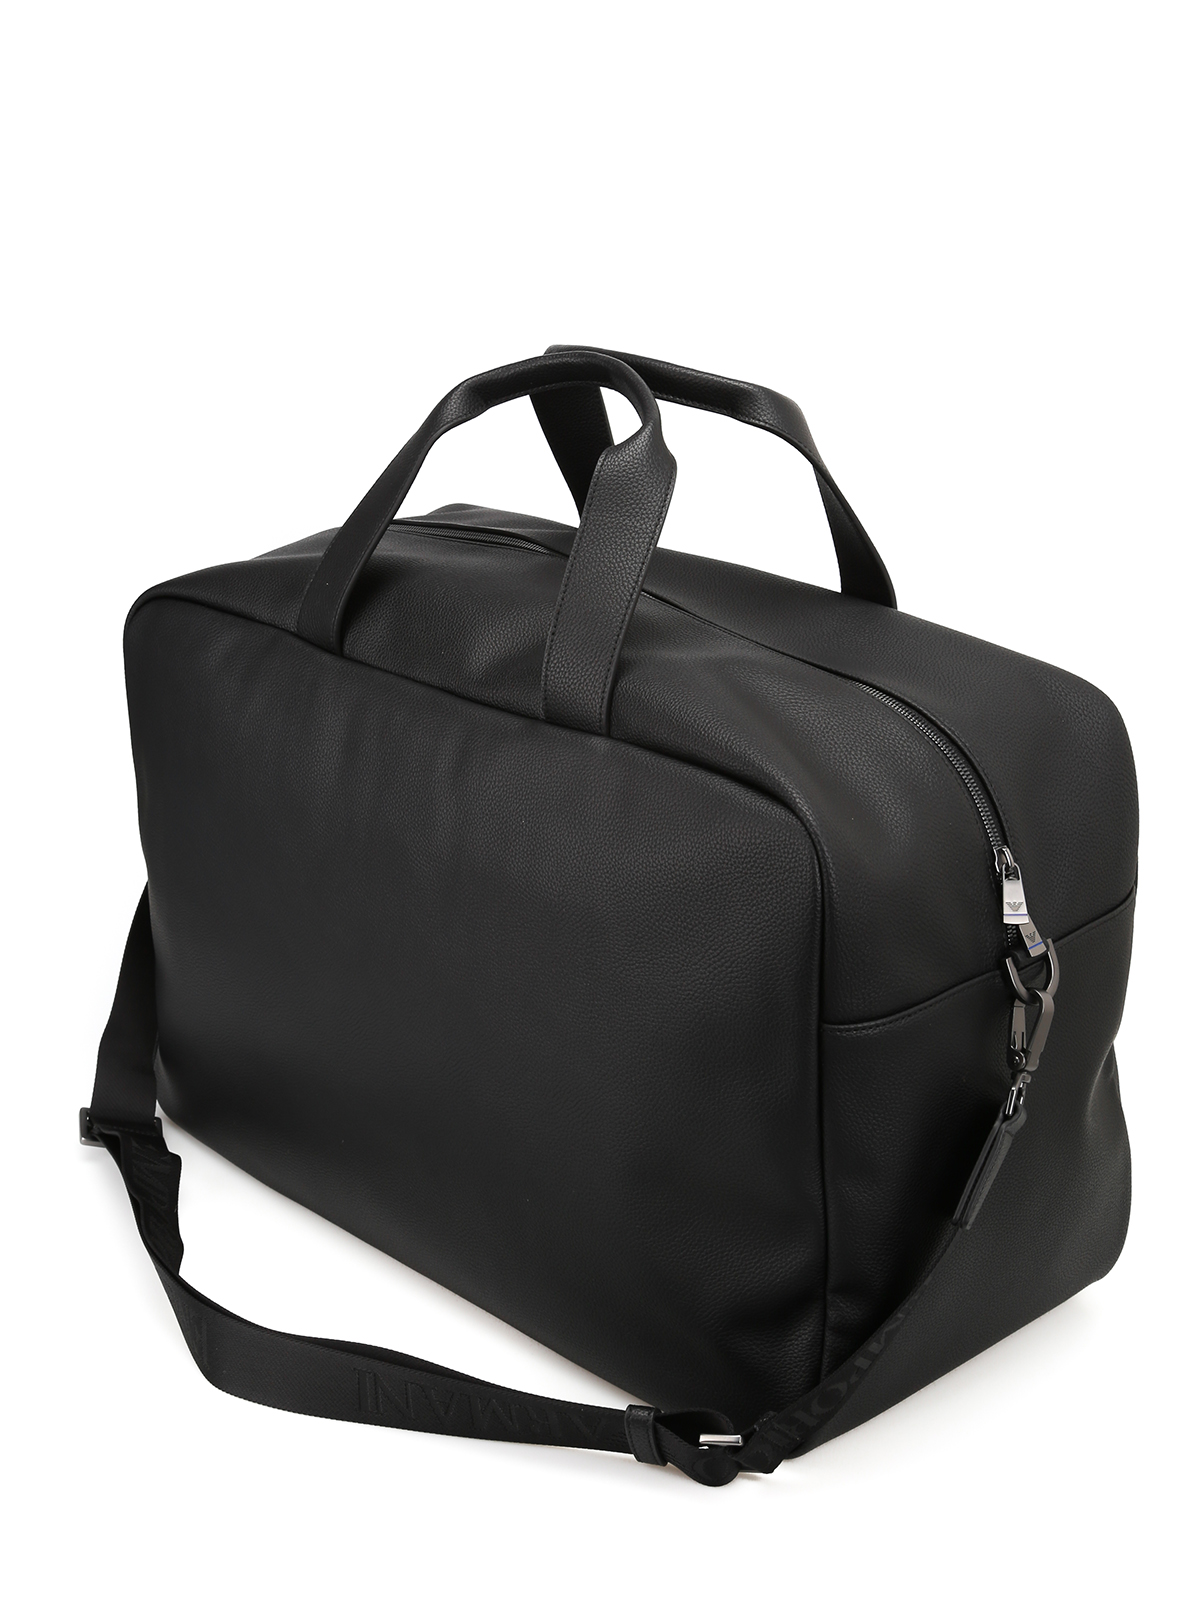 Luggage & Travel bags Emporio Armani - Black faux leather travel bag -  Y4Q083YG89J81072